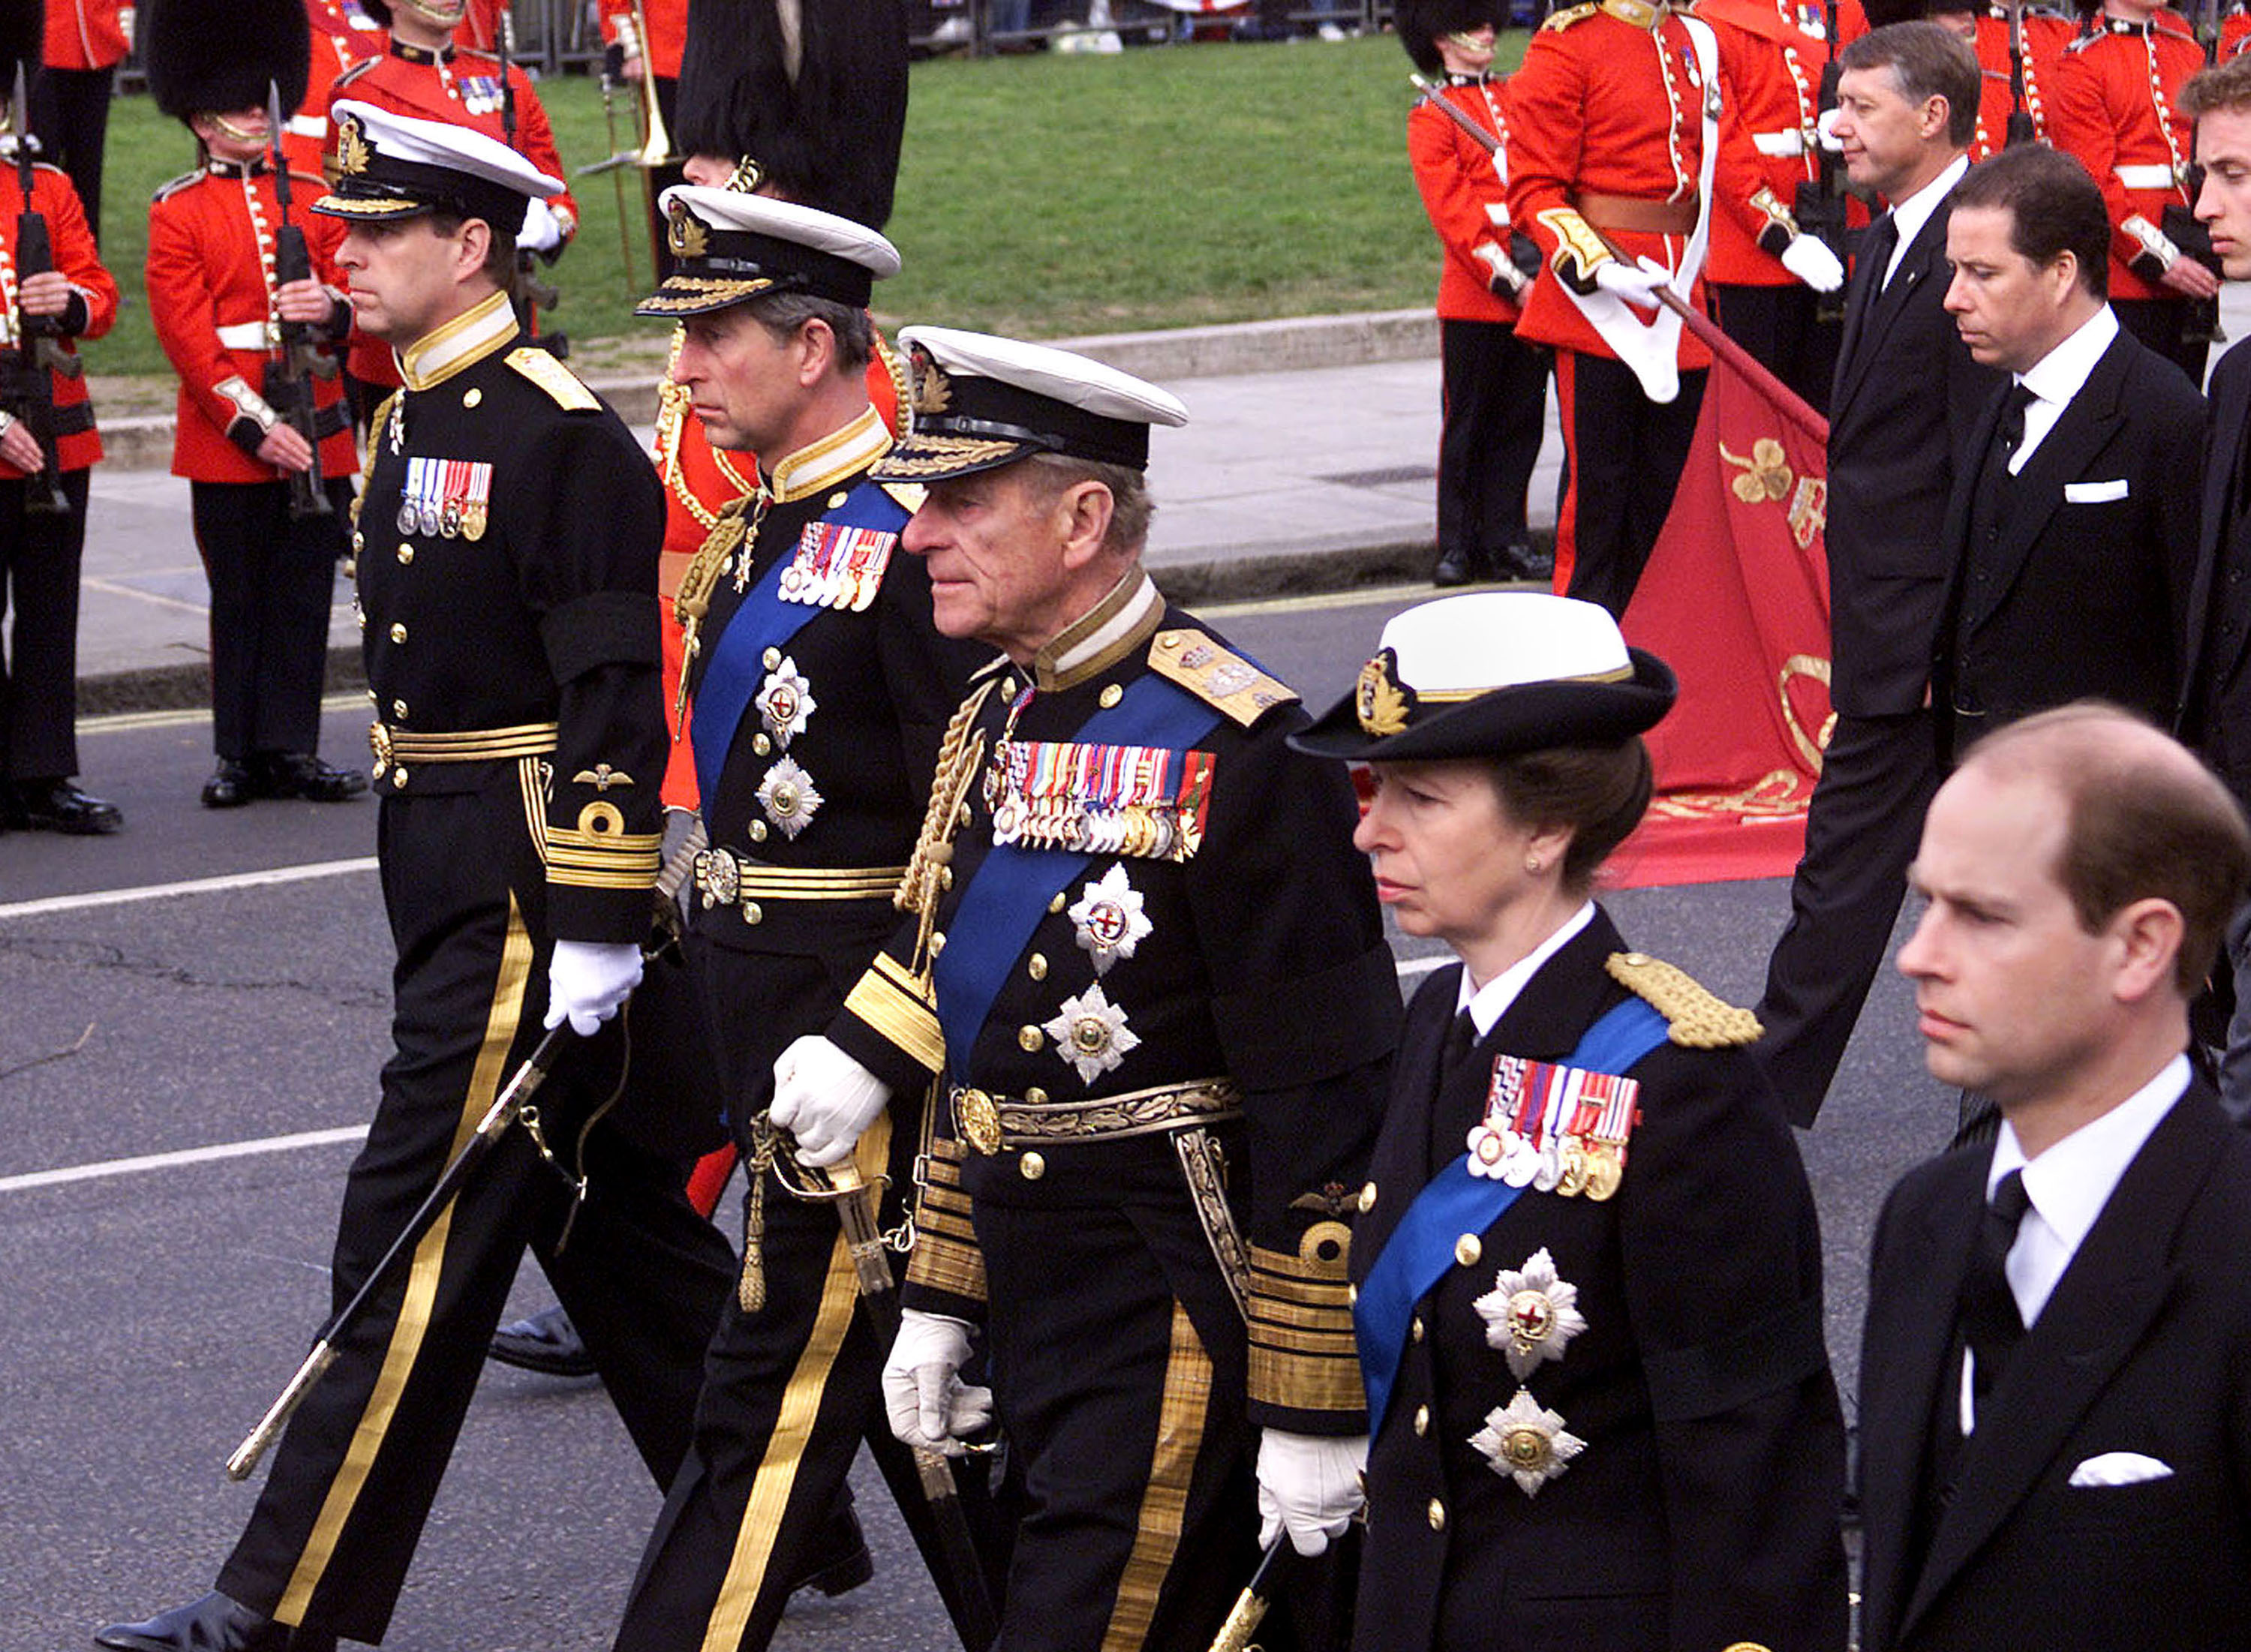 András herceg, Károly herceg, Fülöp herceg, és Anna hercegnő az anyakirályné temetésén 2002-ben